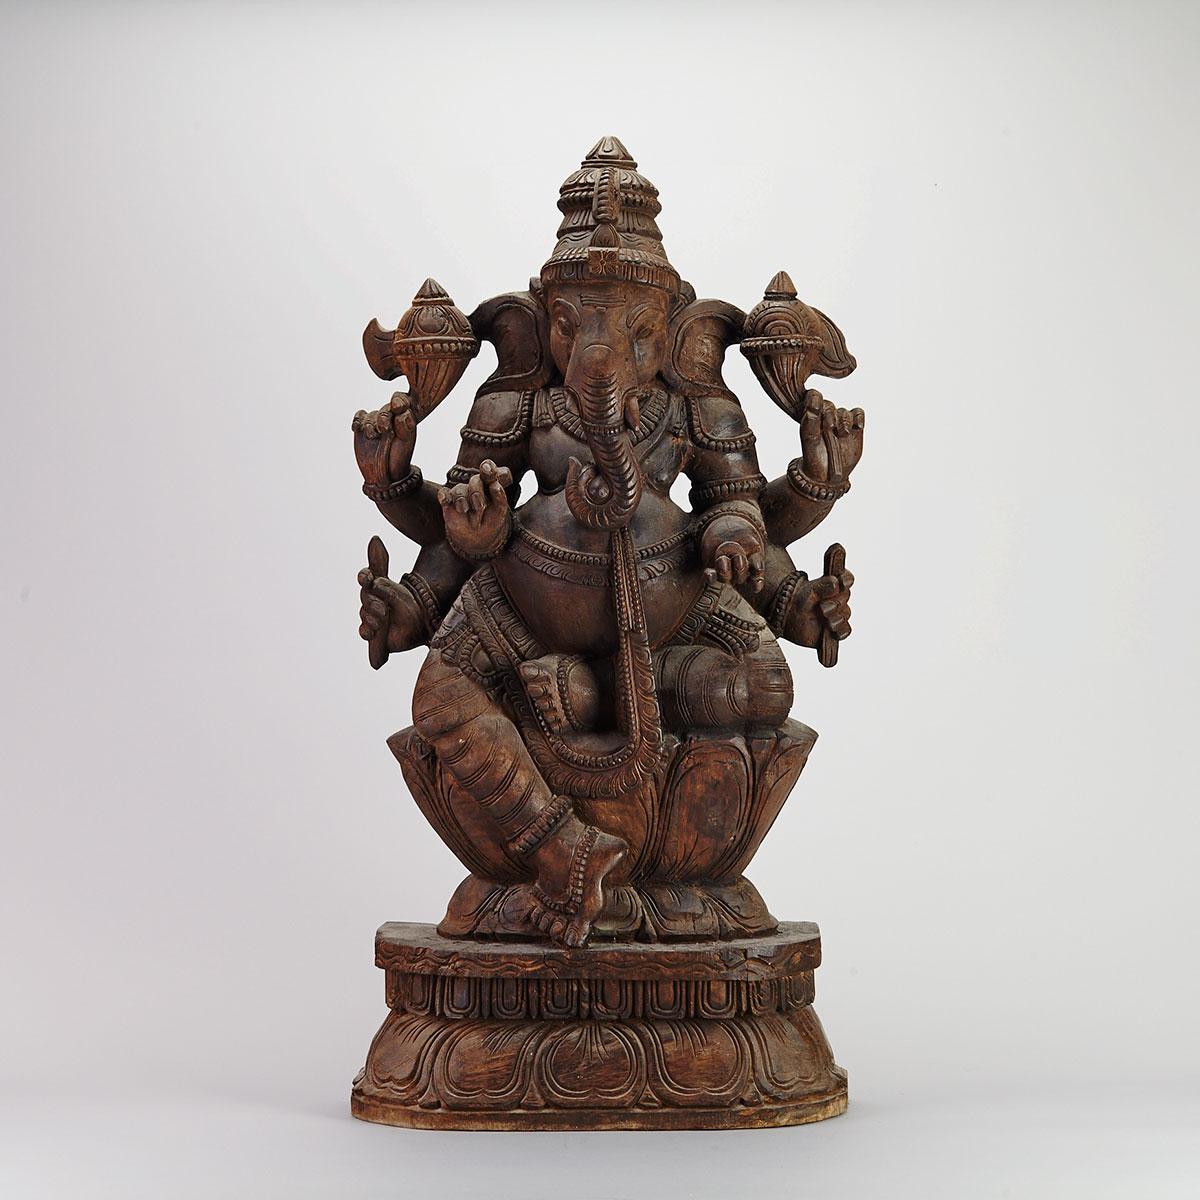 Large Hardwood Figure of Ganesh, South Asia